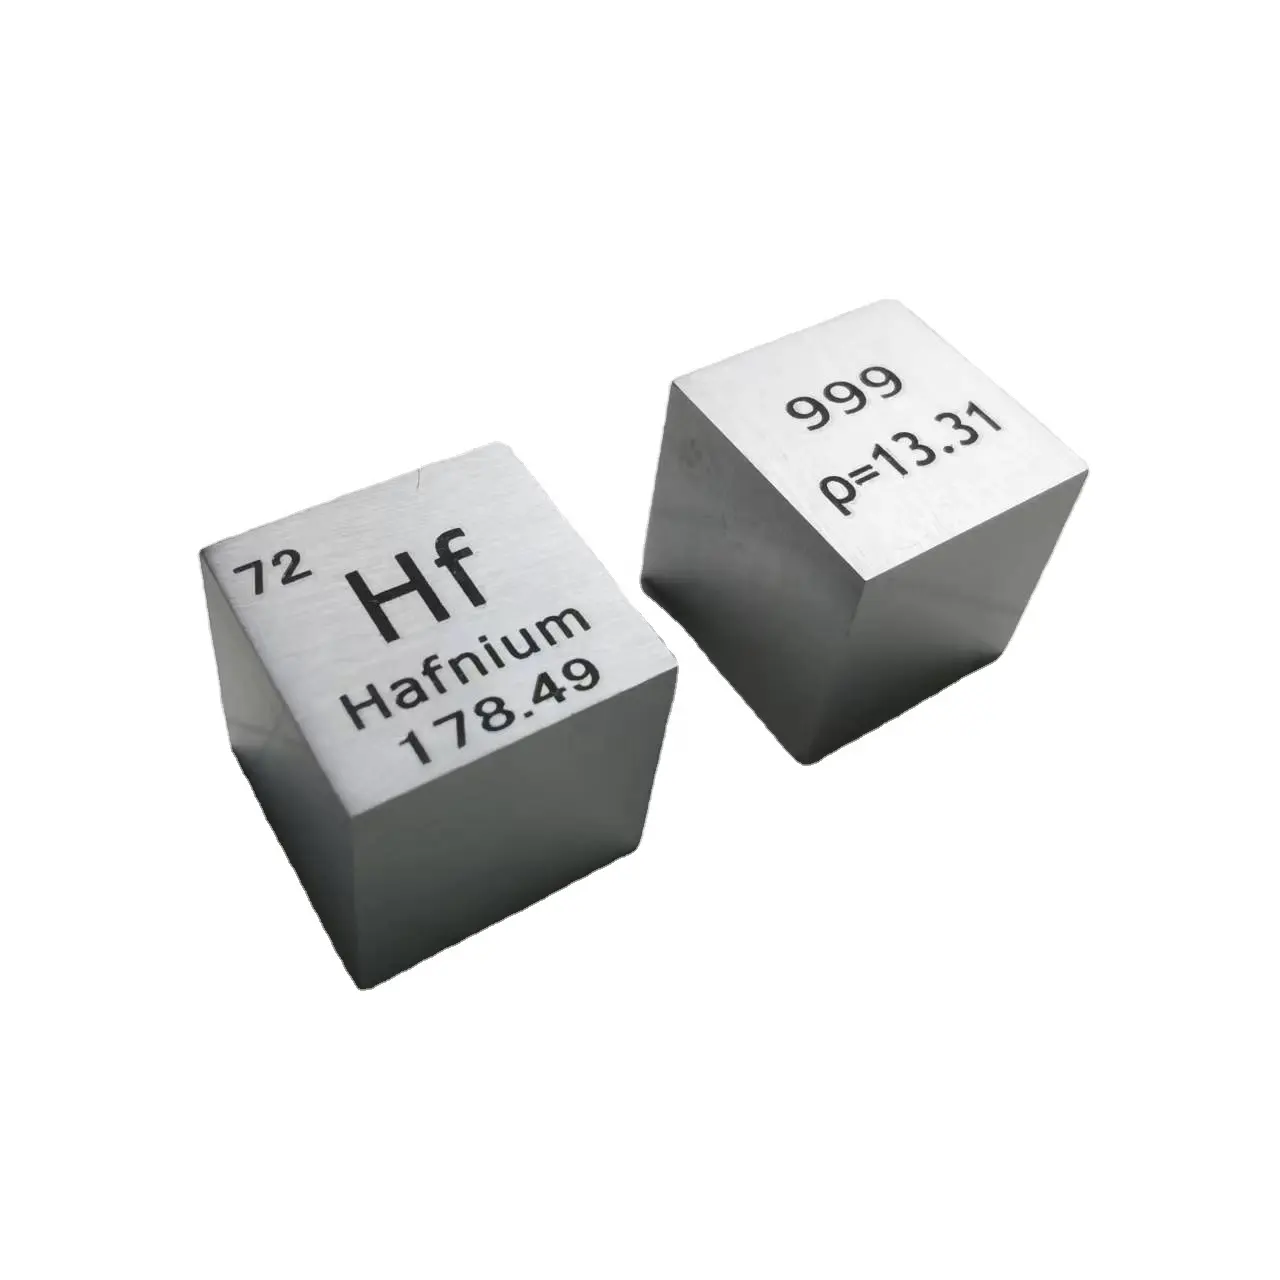 1 pouce Offre Spéciale 99.99 Hafnium Cube Mg cube 10mm pur Hf métal pour tableau périodique Collection